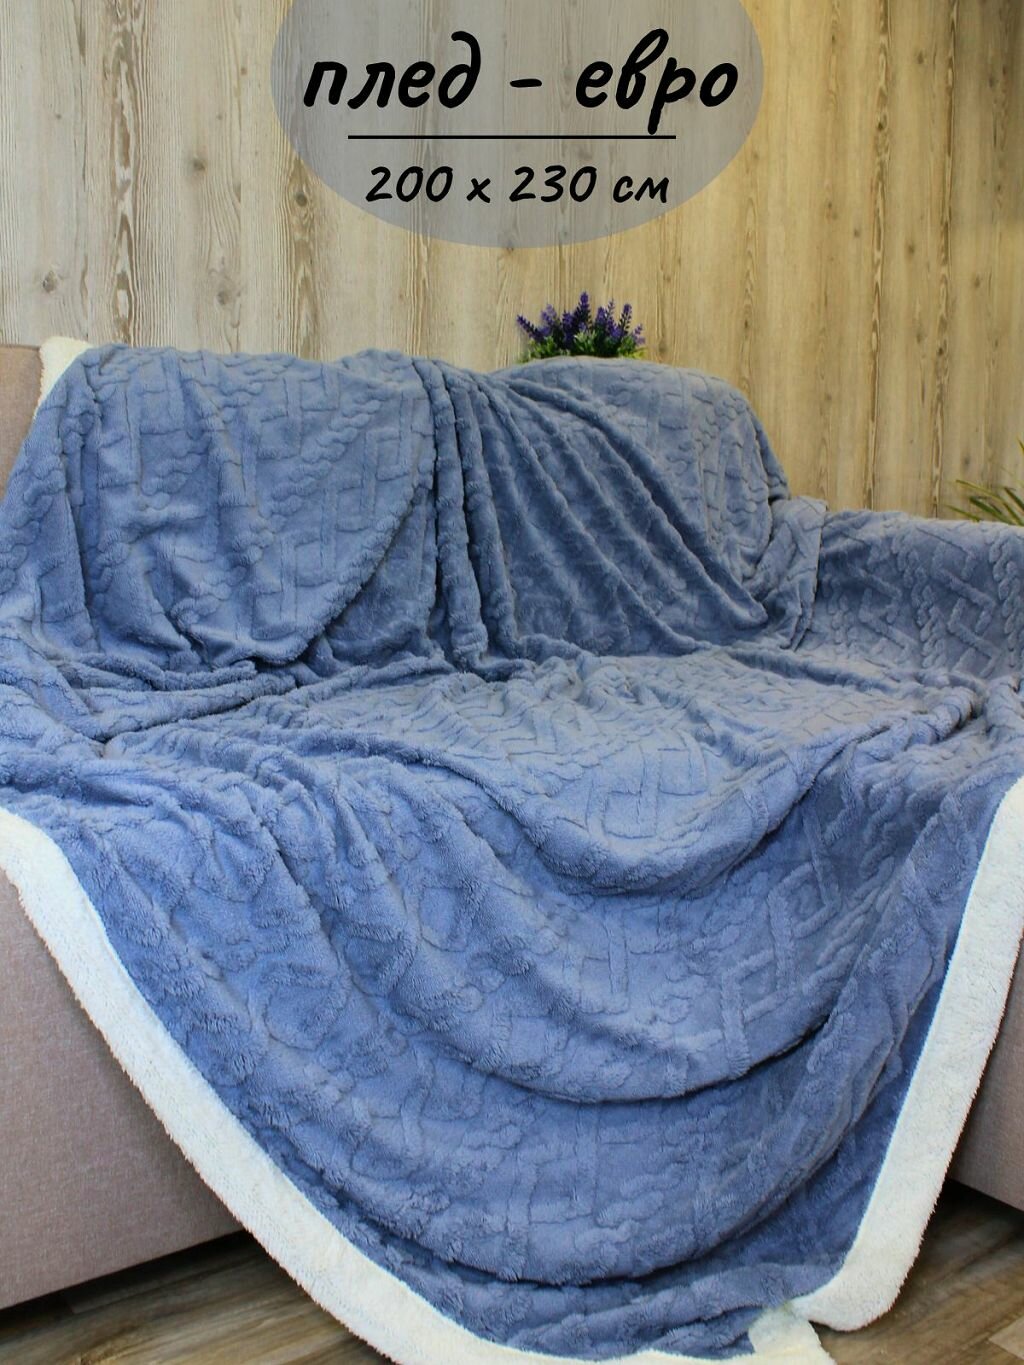 Плед евро 200х230см на диван кровать мягкий синий (Т0115-140)